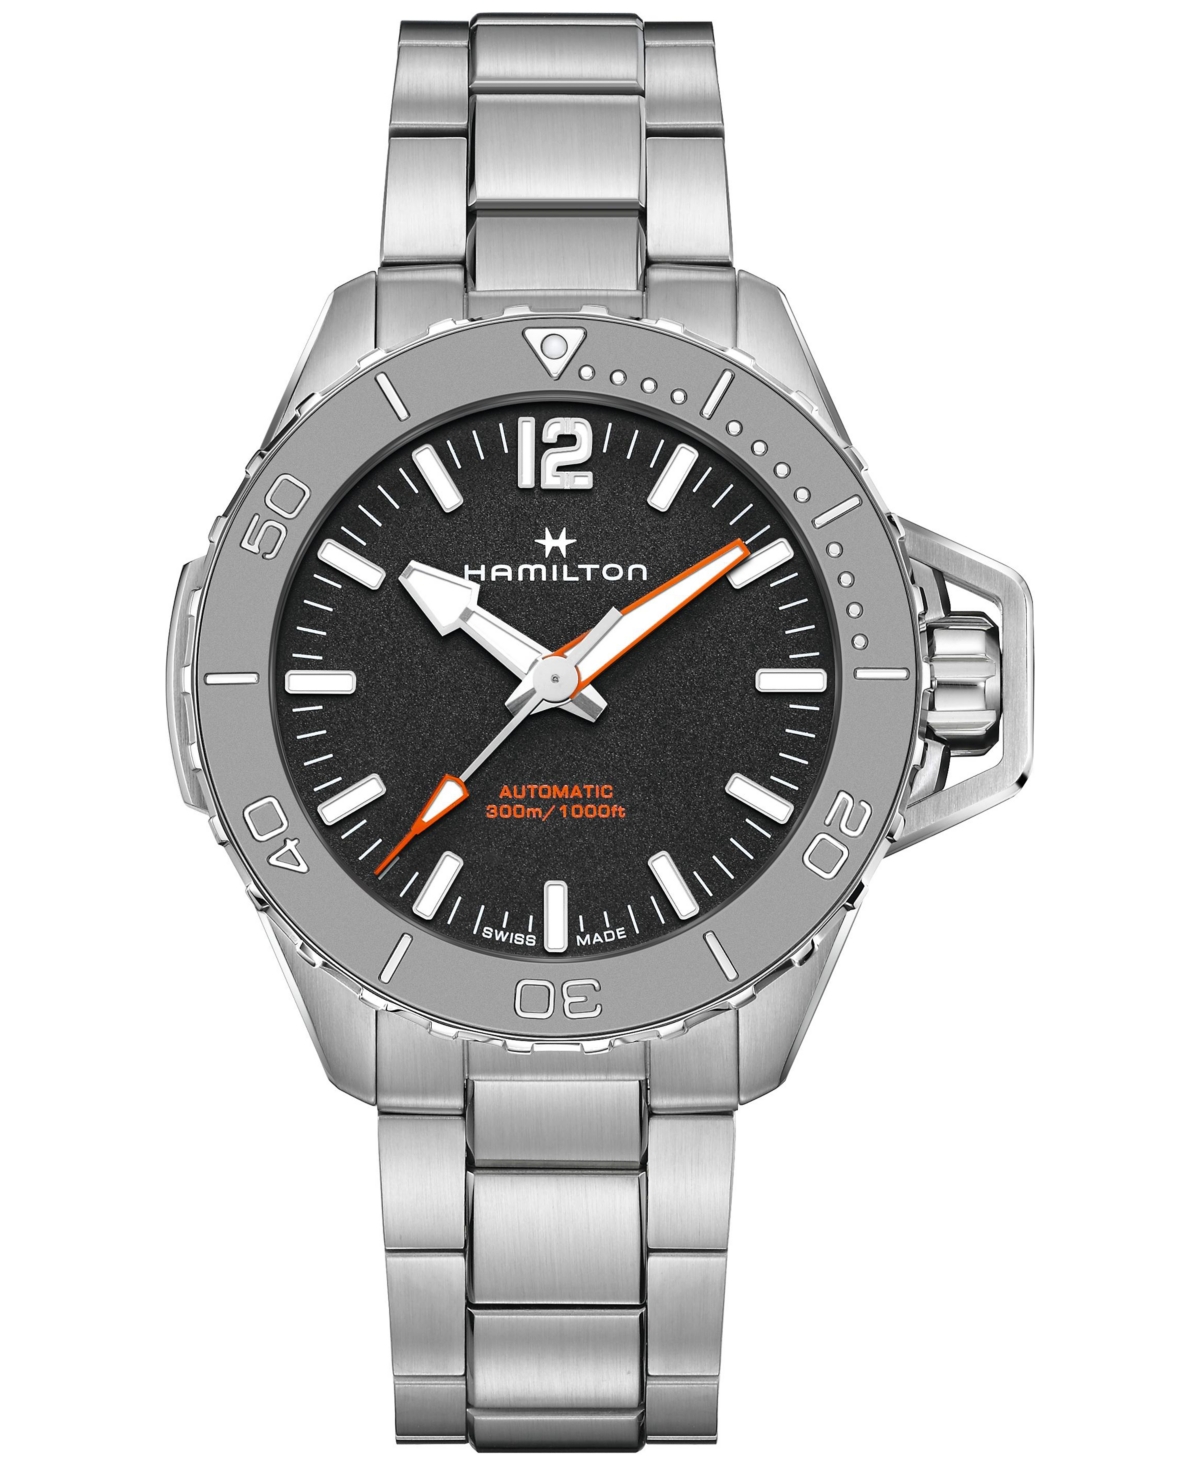 Men's Swiss Automatic Khaki Navy Frogman Stainless Steel Bracelet Watch 46mm - Black